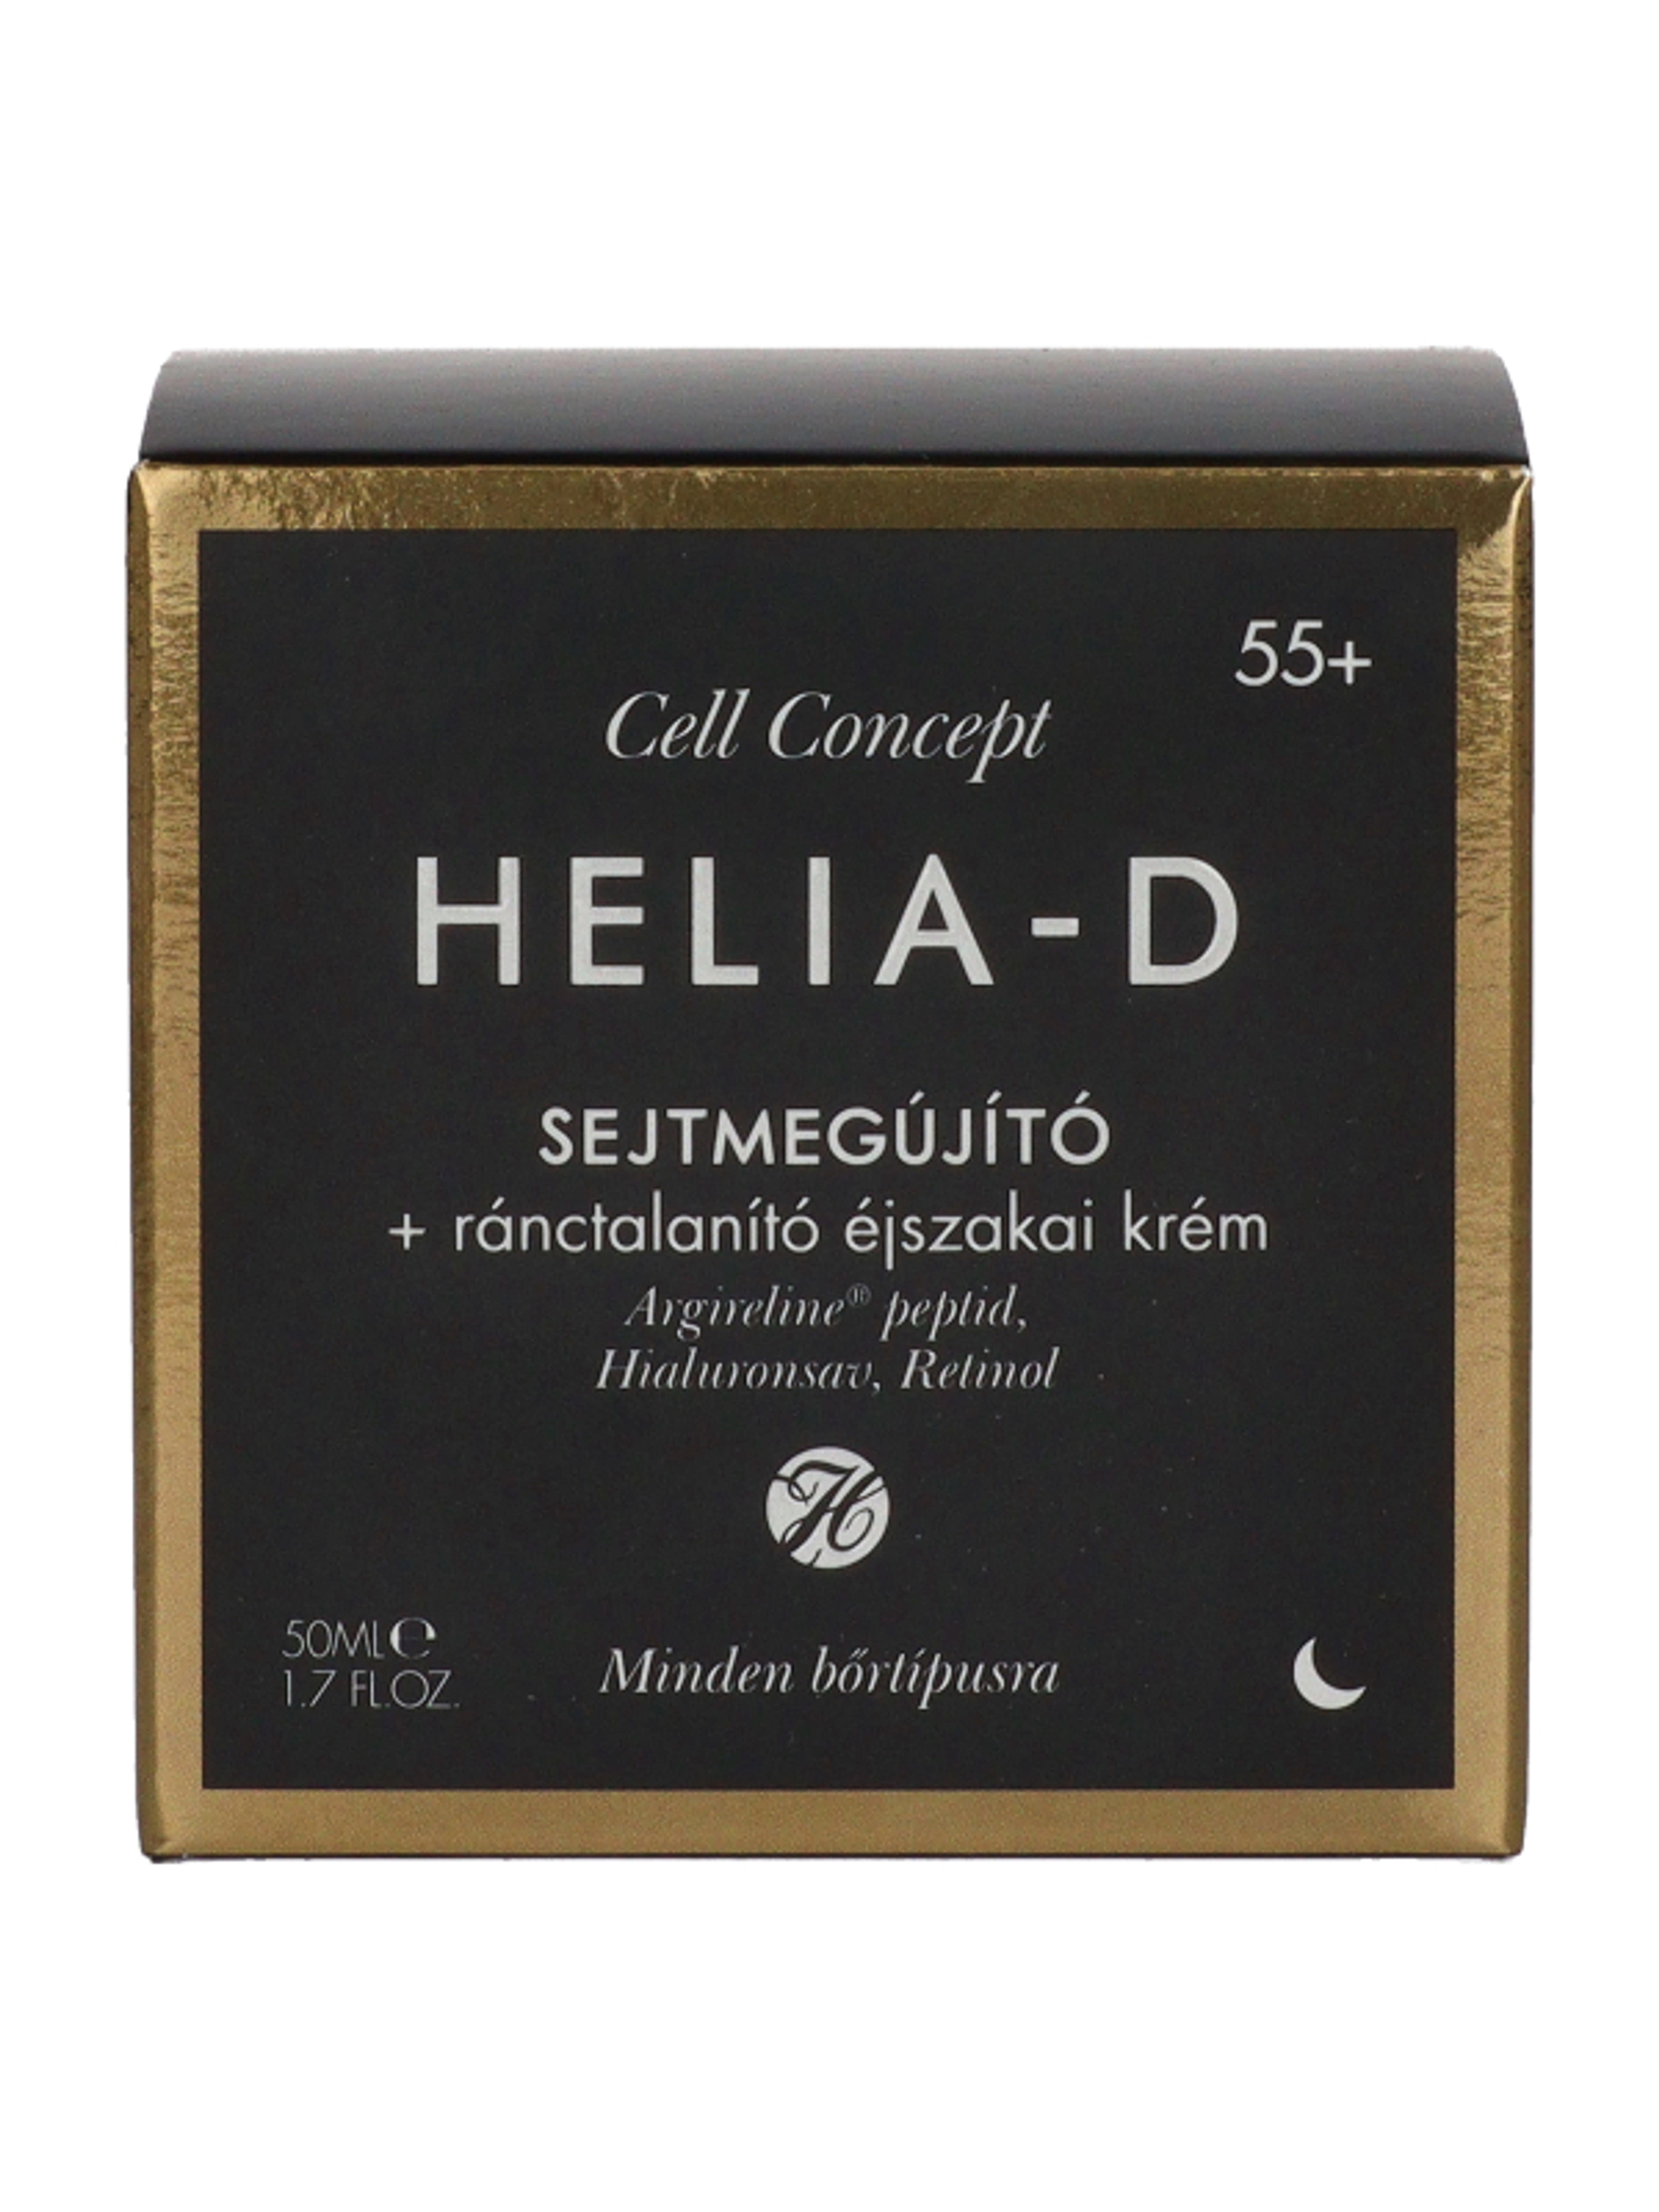 Helia-D Cell Concept sejtmegújító ránctalanító éjszakai krém 55+ - 50 ml-3